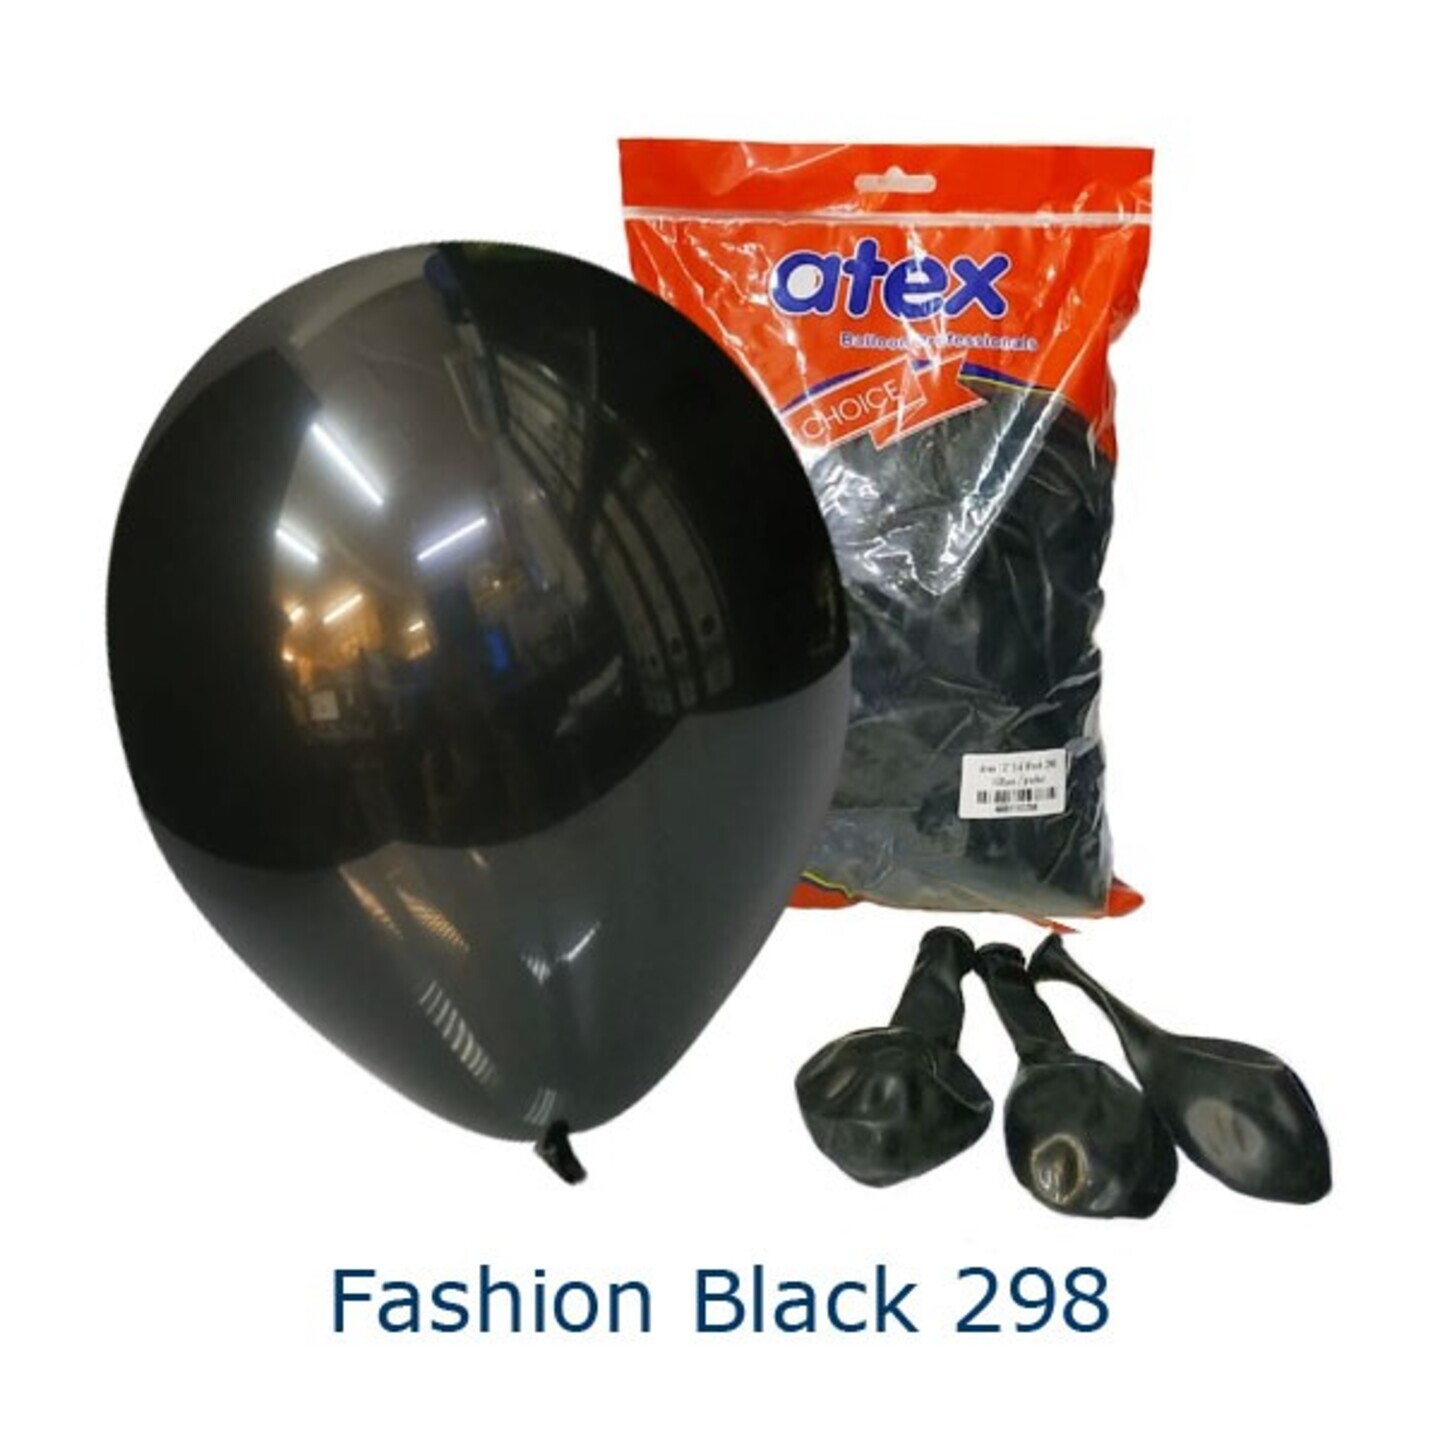 Fashion Black 298